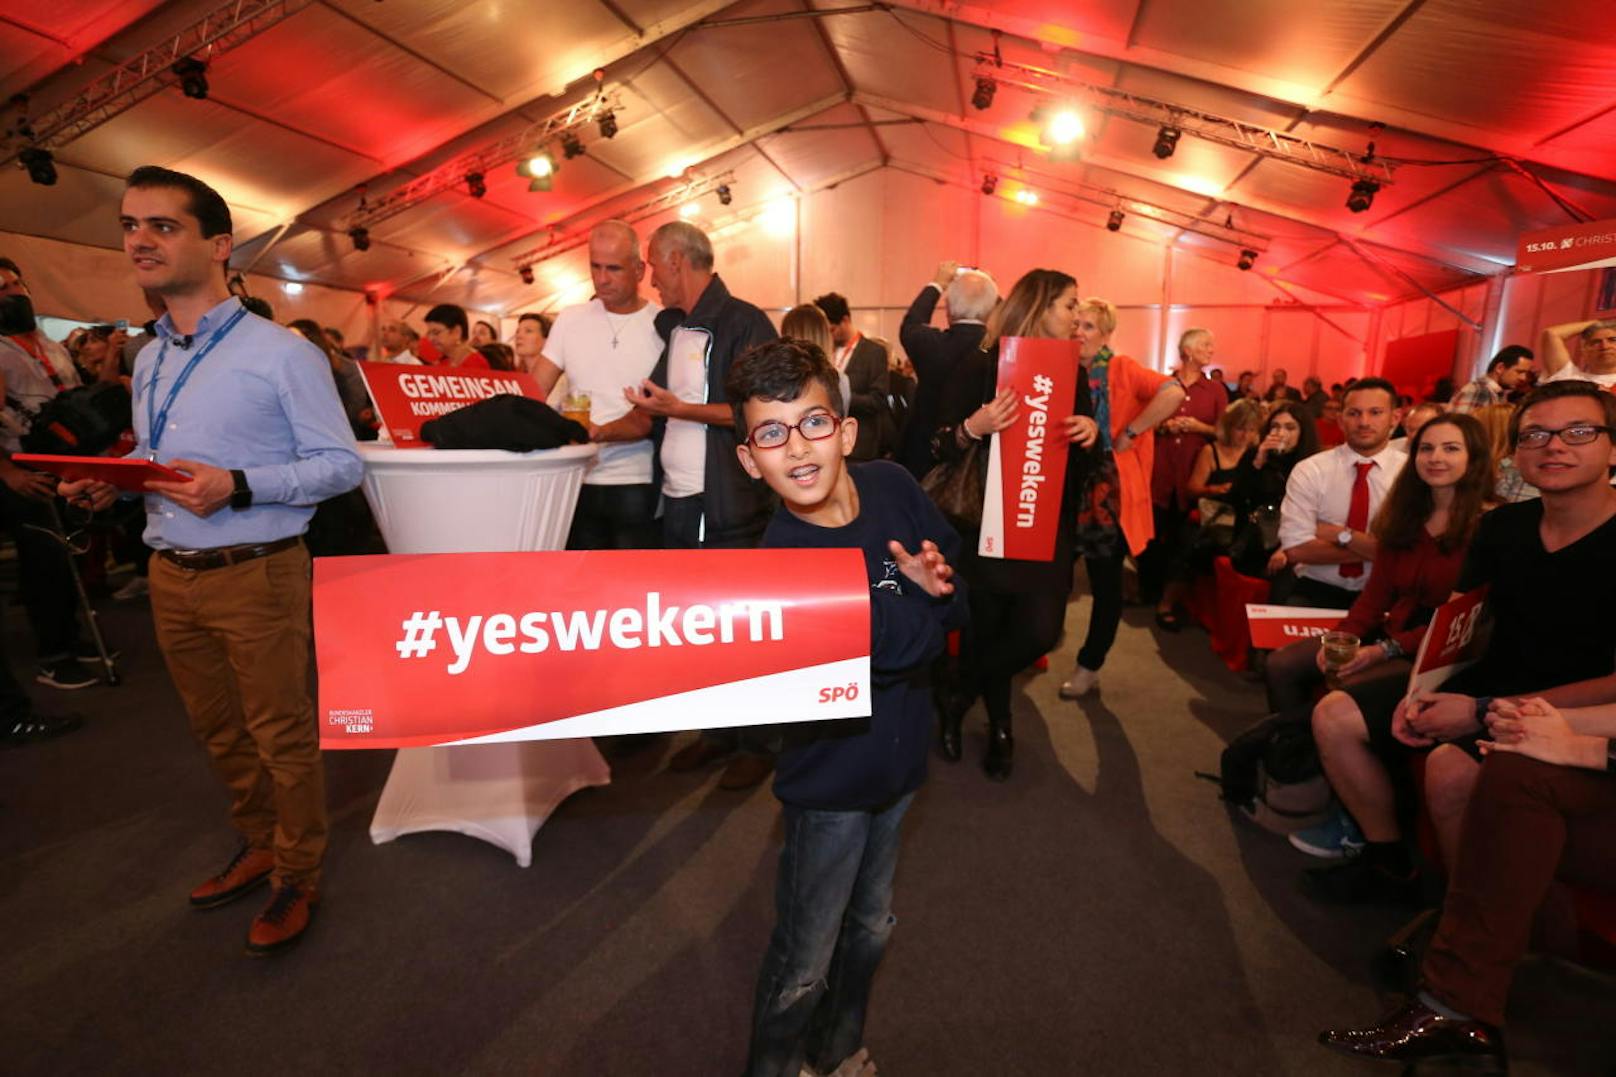 Bei der SPÖ herrschte zunächst Schock über Platz drei in den ersten Hochrechnungen. Als es in den weiteren Prognosen dann doch noch für den zweiten Platz reichte, machte sich Erleichterung breit.